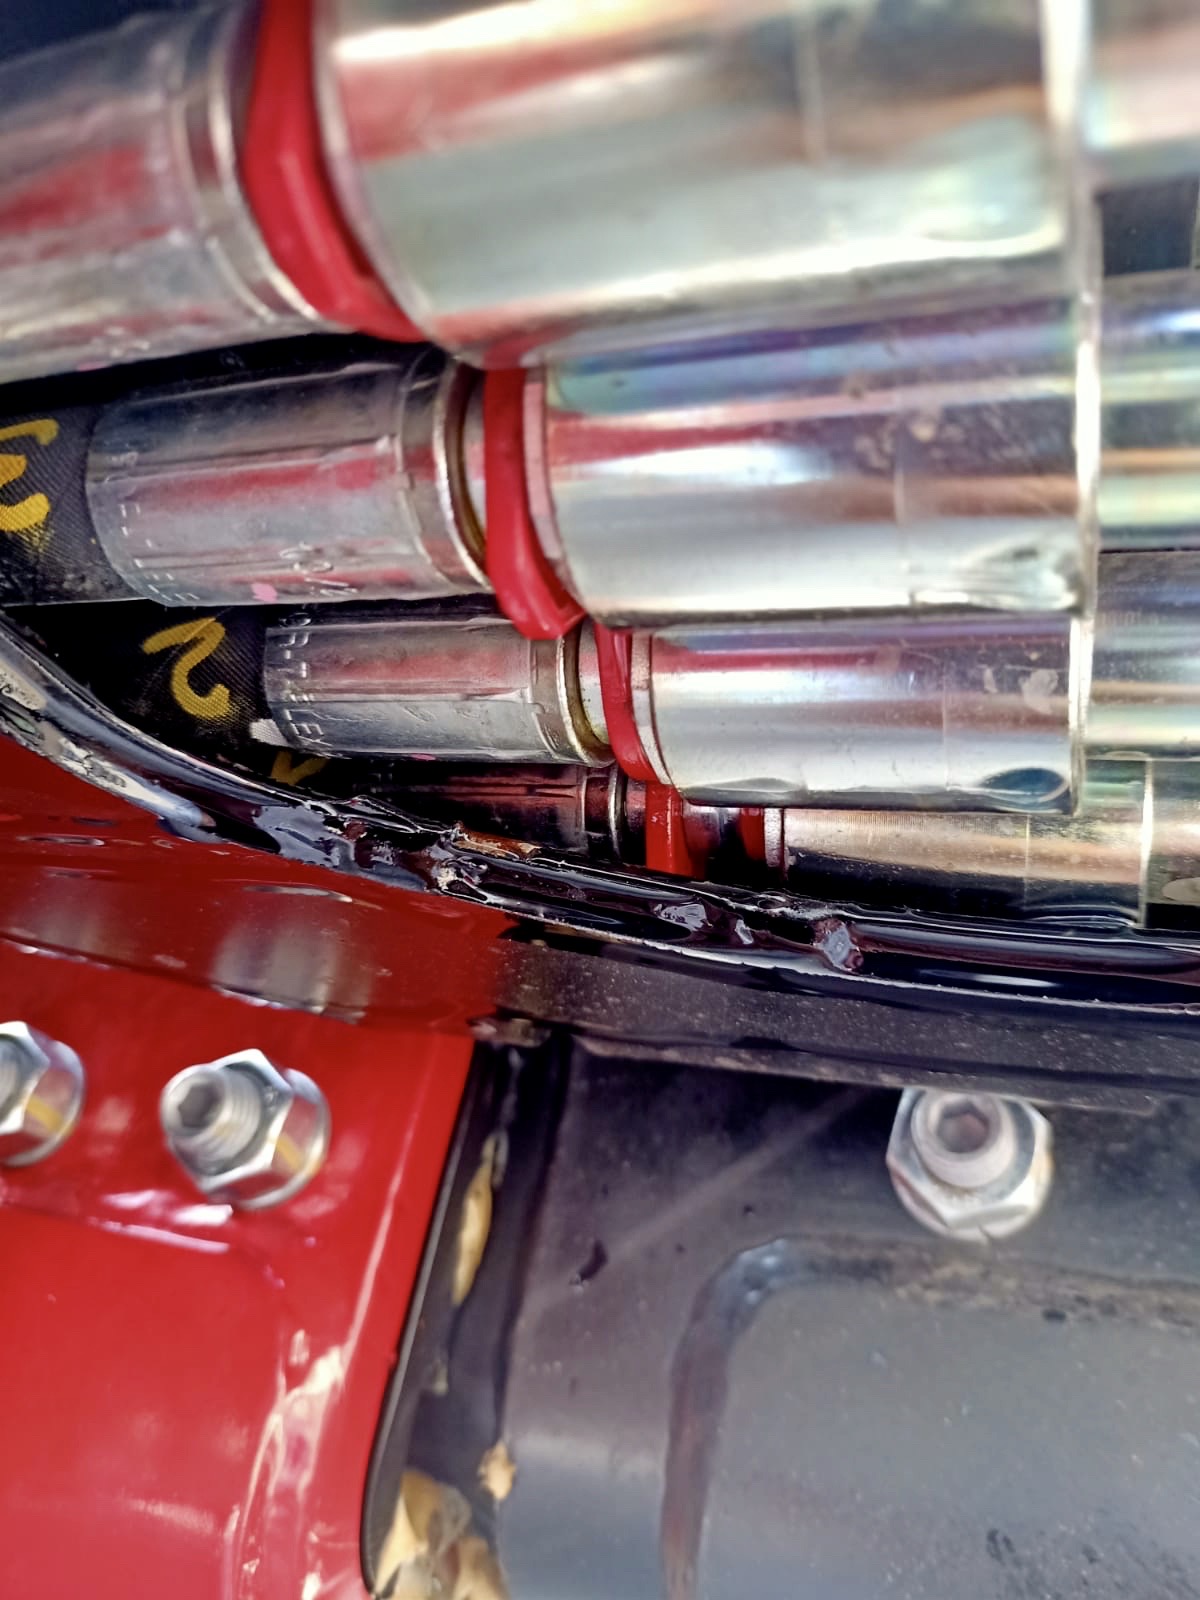 RM Service sostituzione tubo oleodinamico su sollevatore telescopico.